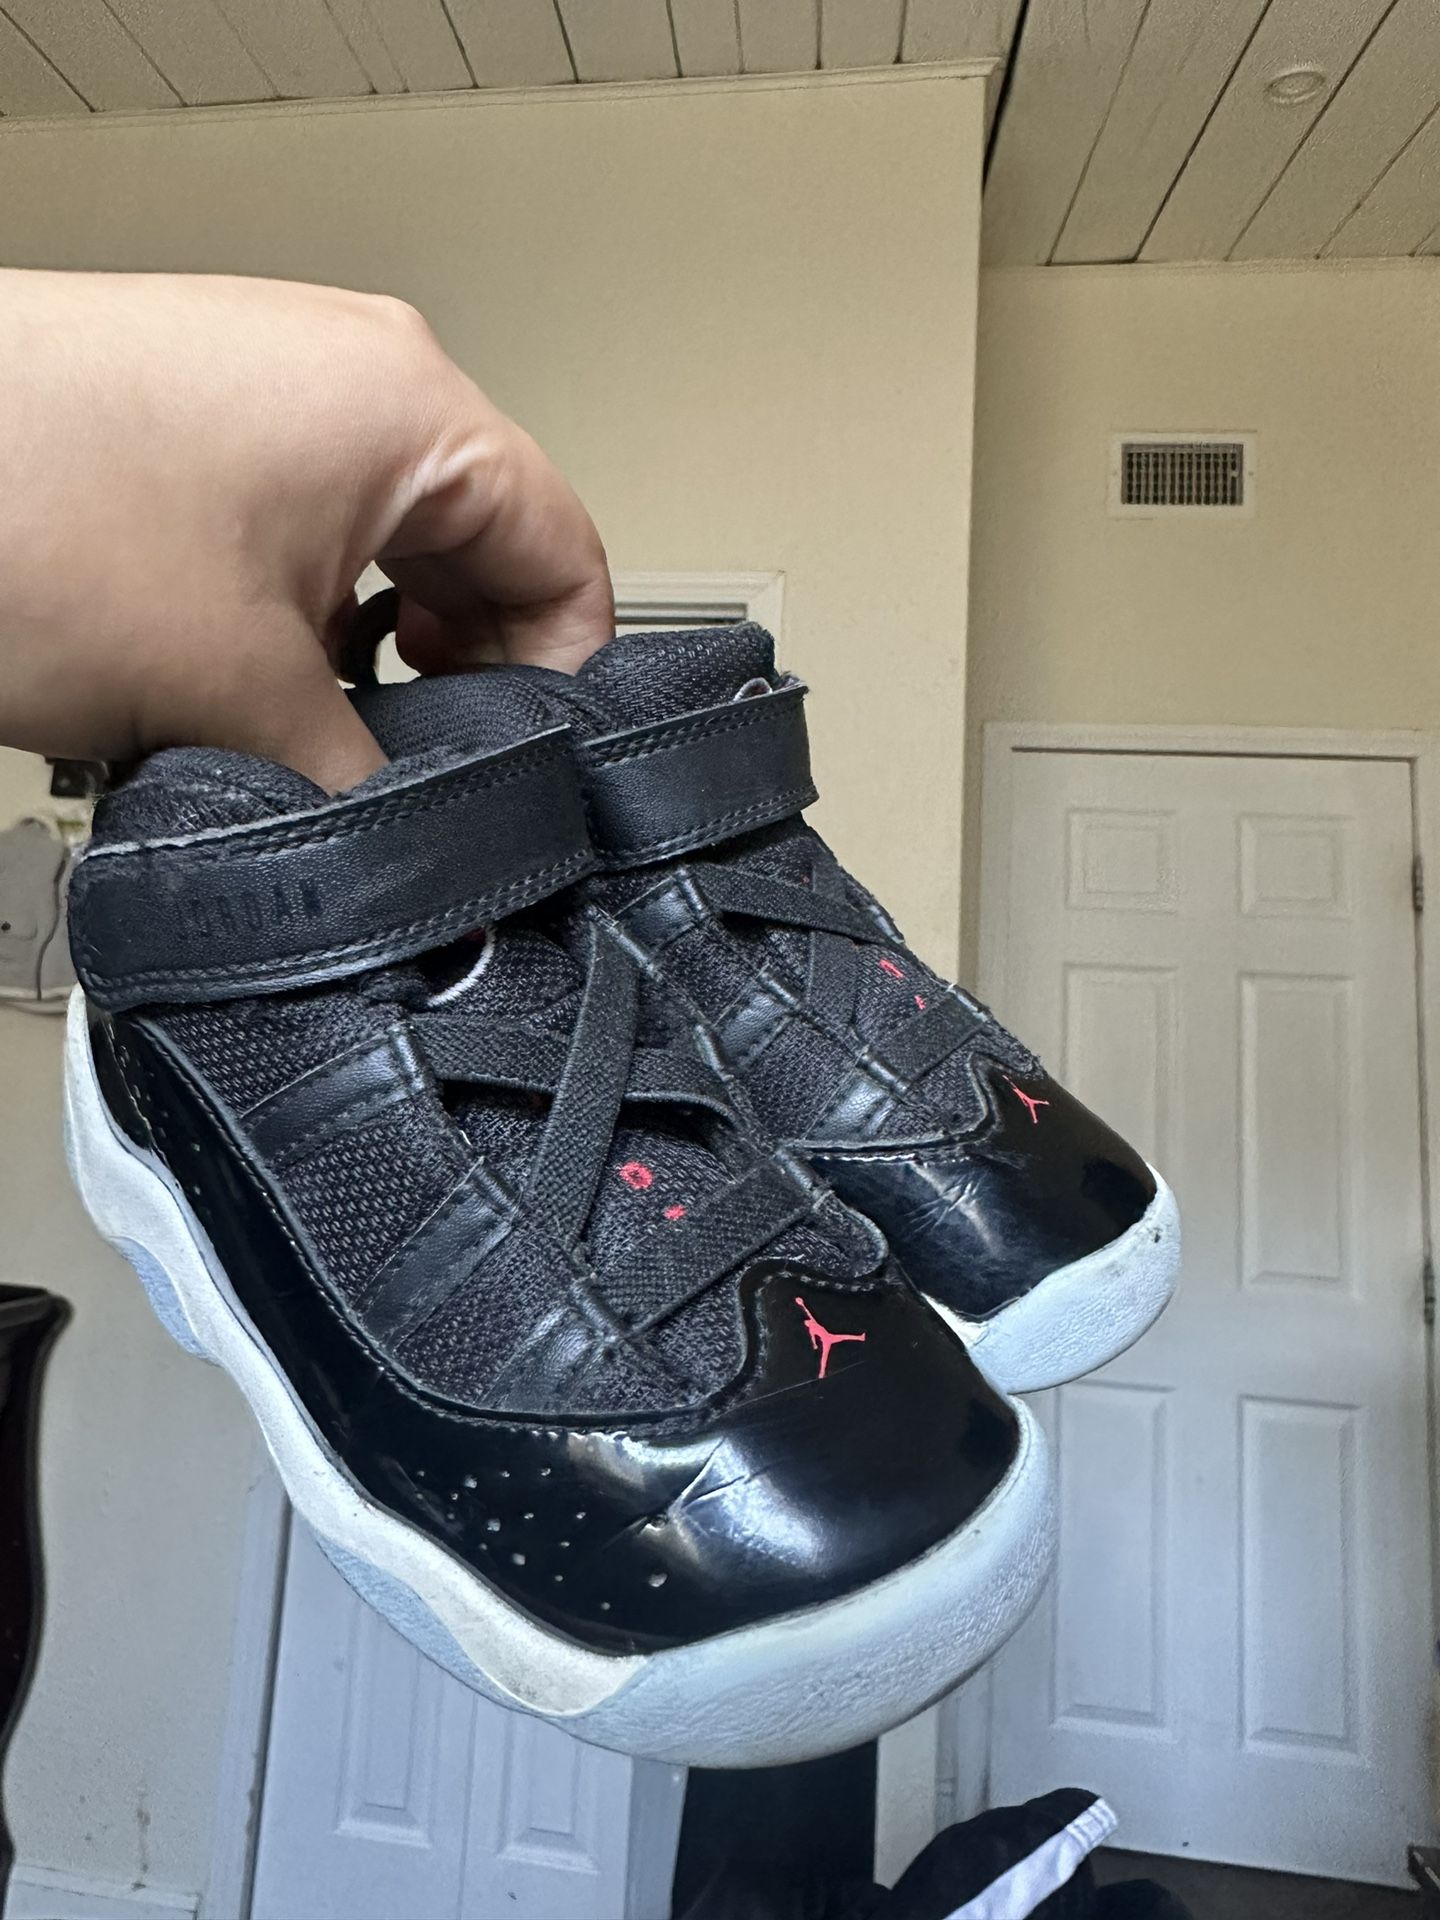 Jordan Shoes For Babies Size 8 